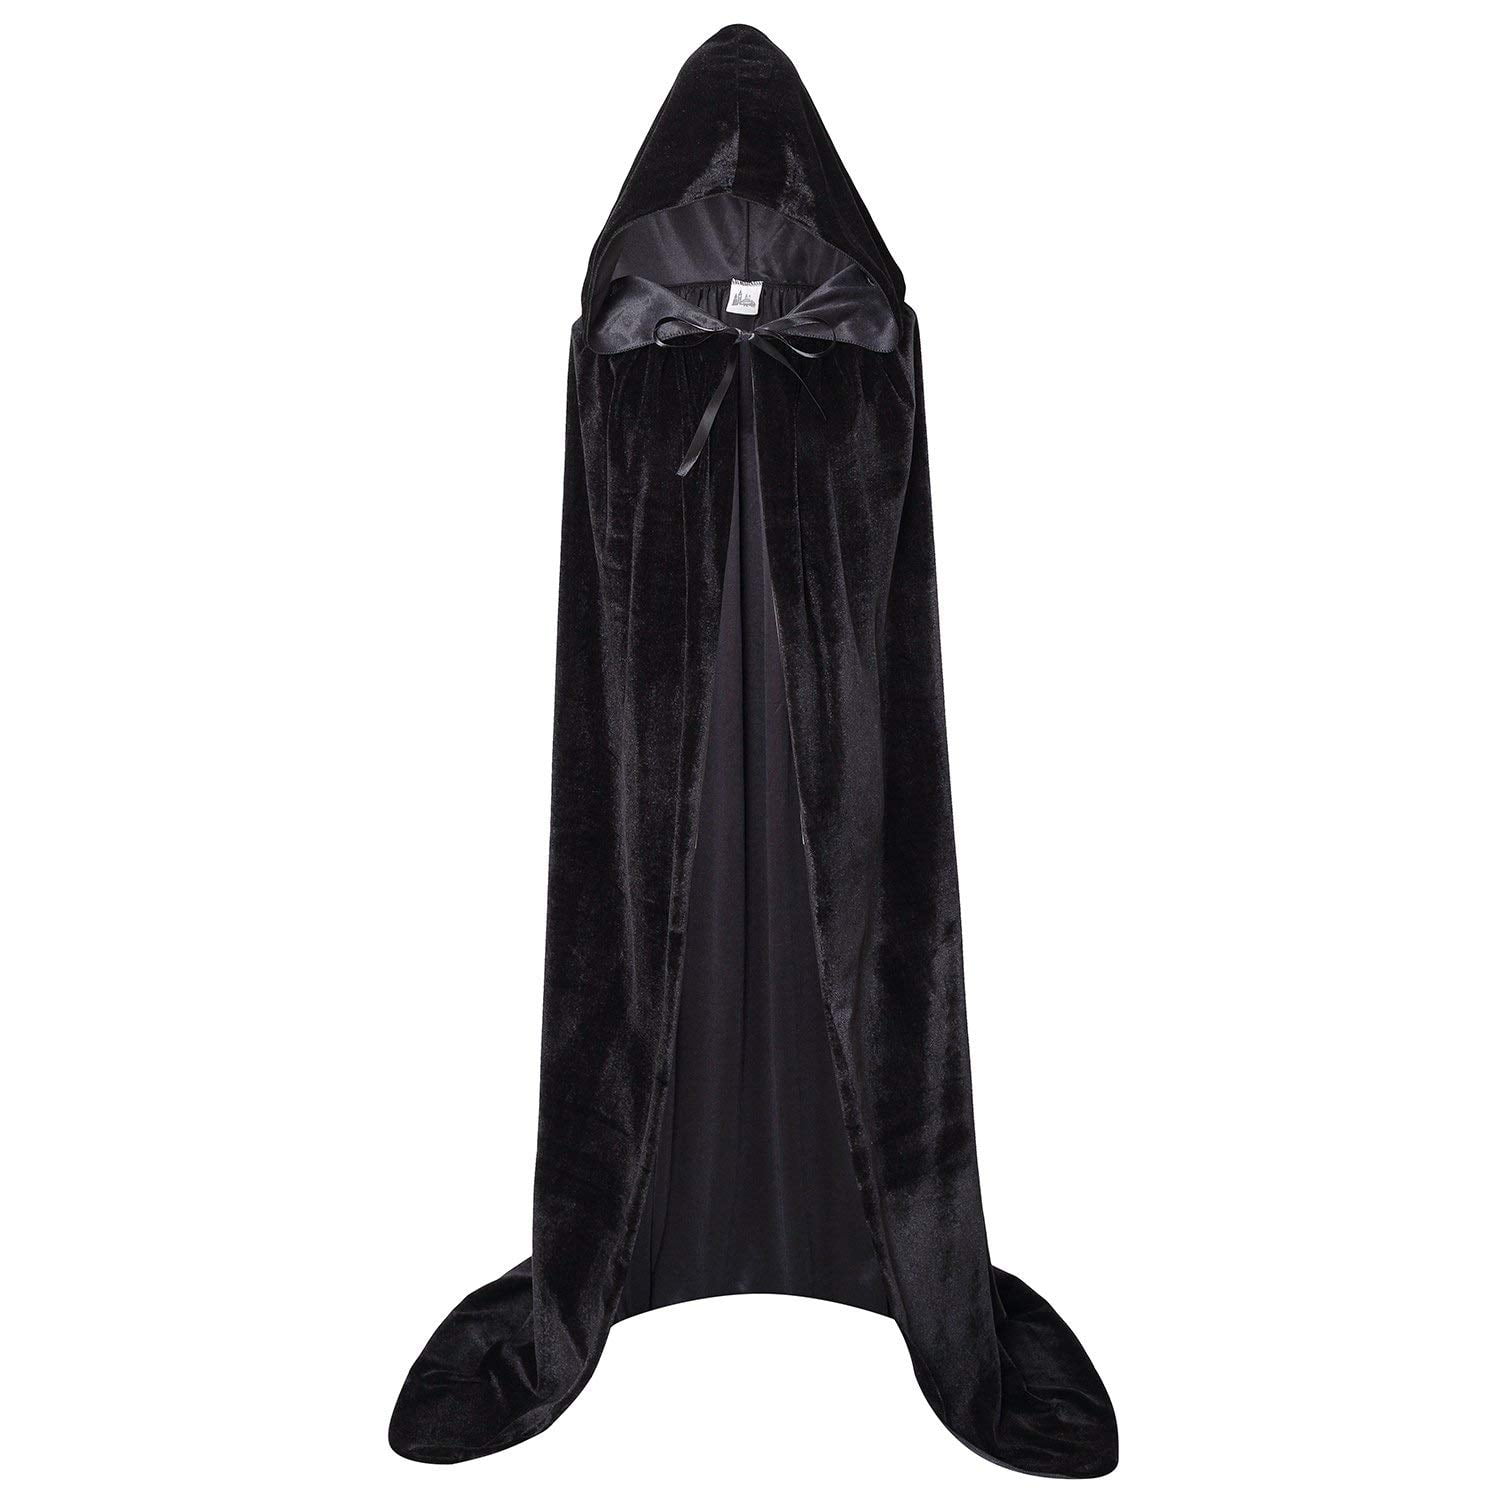 Inevnen Unisex Adults Long Hooded Cloak Velvet Cape for Halloween ...